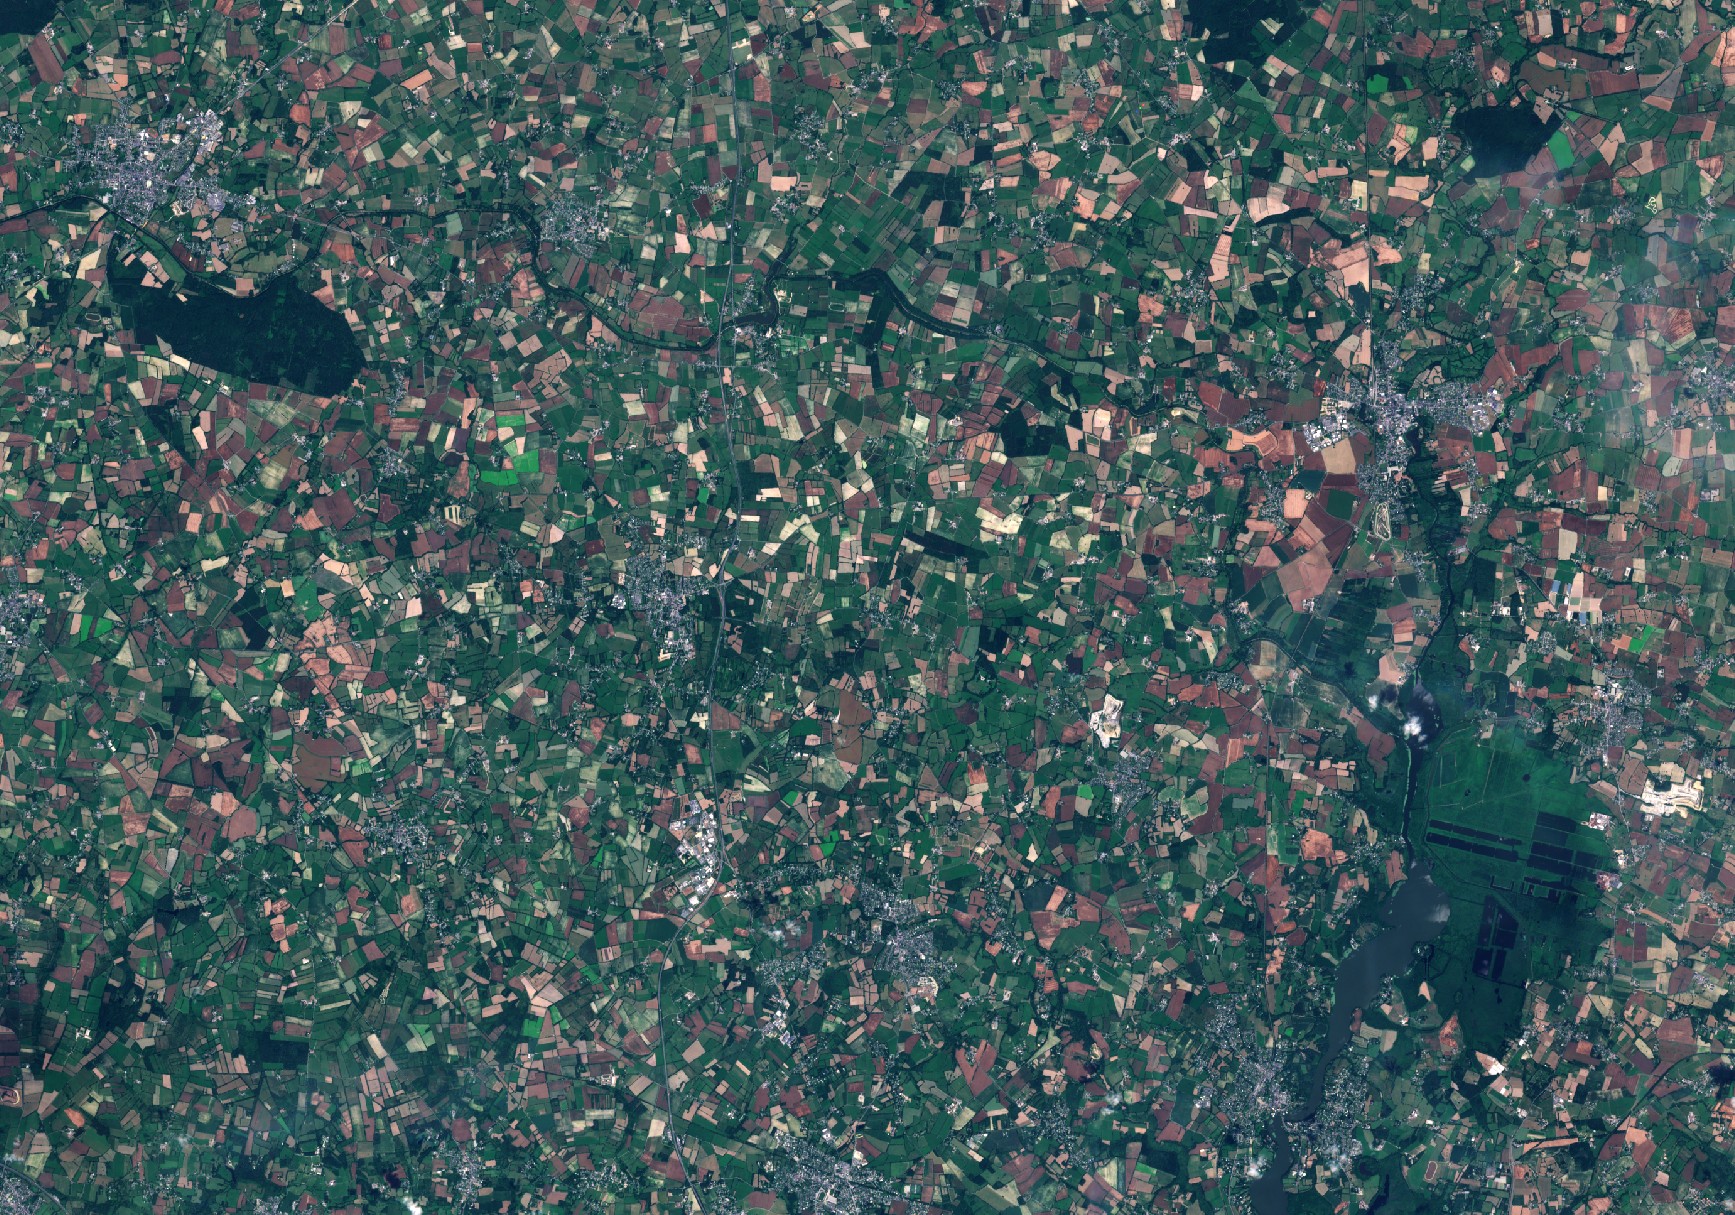 Un autre regard sur la Terre - Quiz - Quizz - Image satellite et environnement - Earth observation - Indice - Juillet 2016